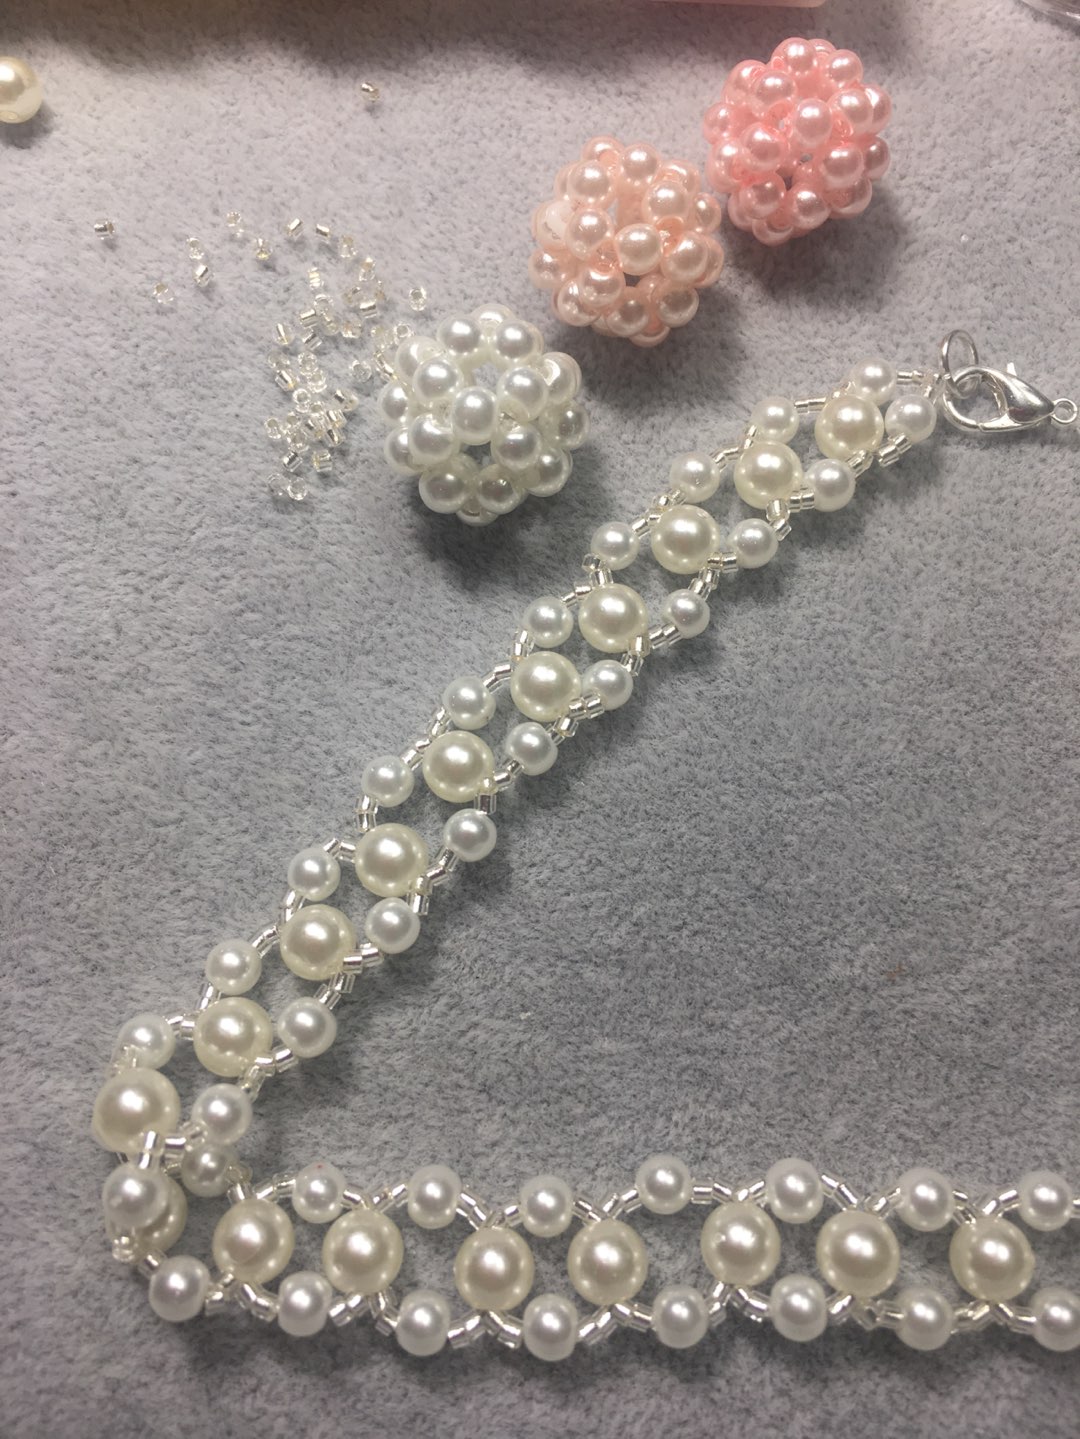 简单的材料做出美丽的珍珠